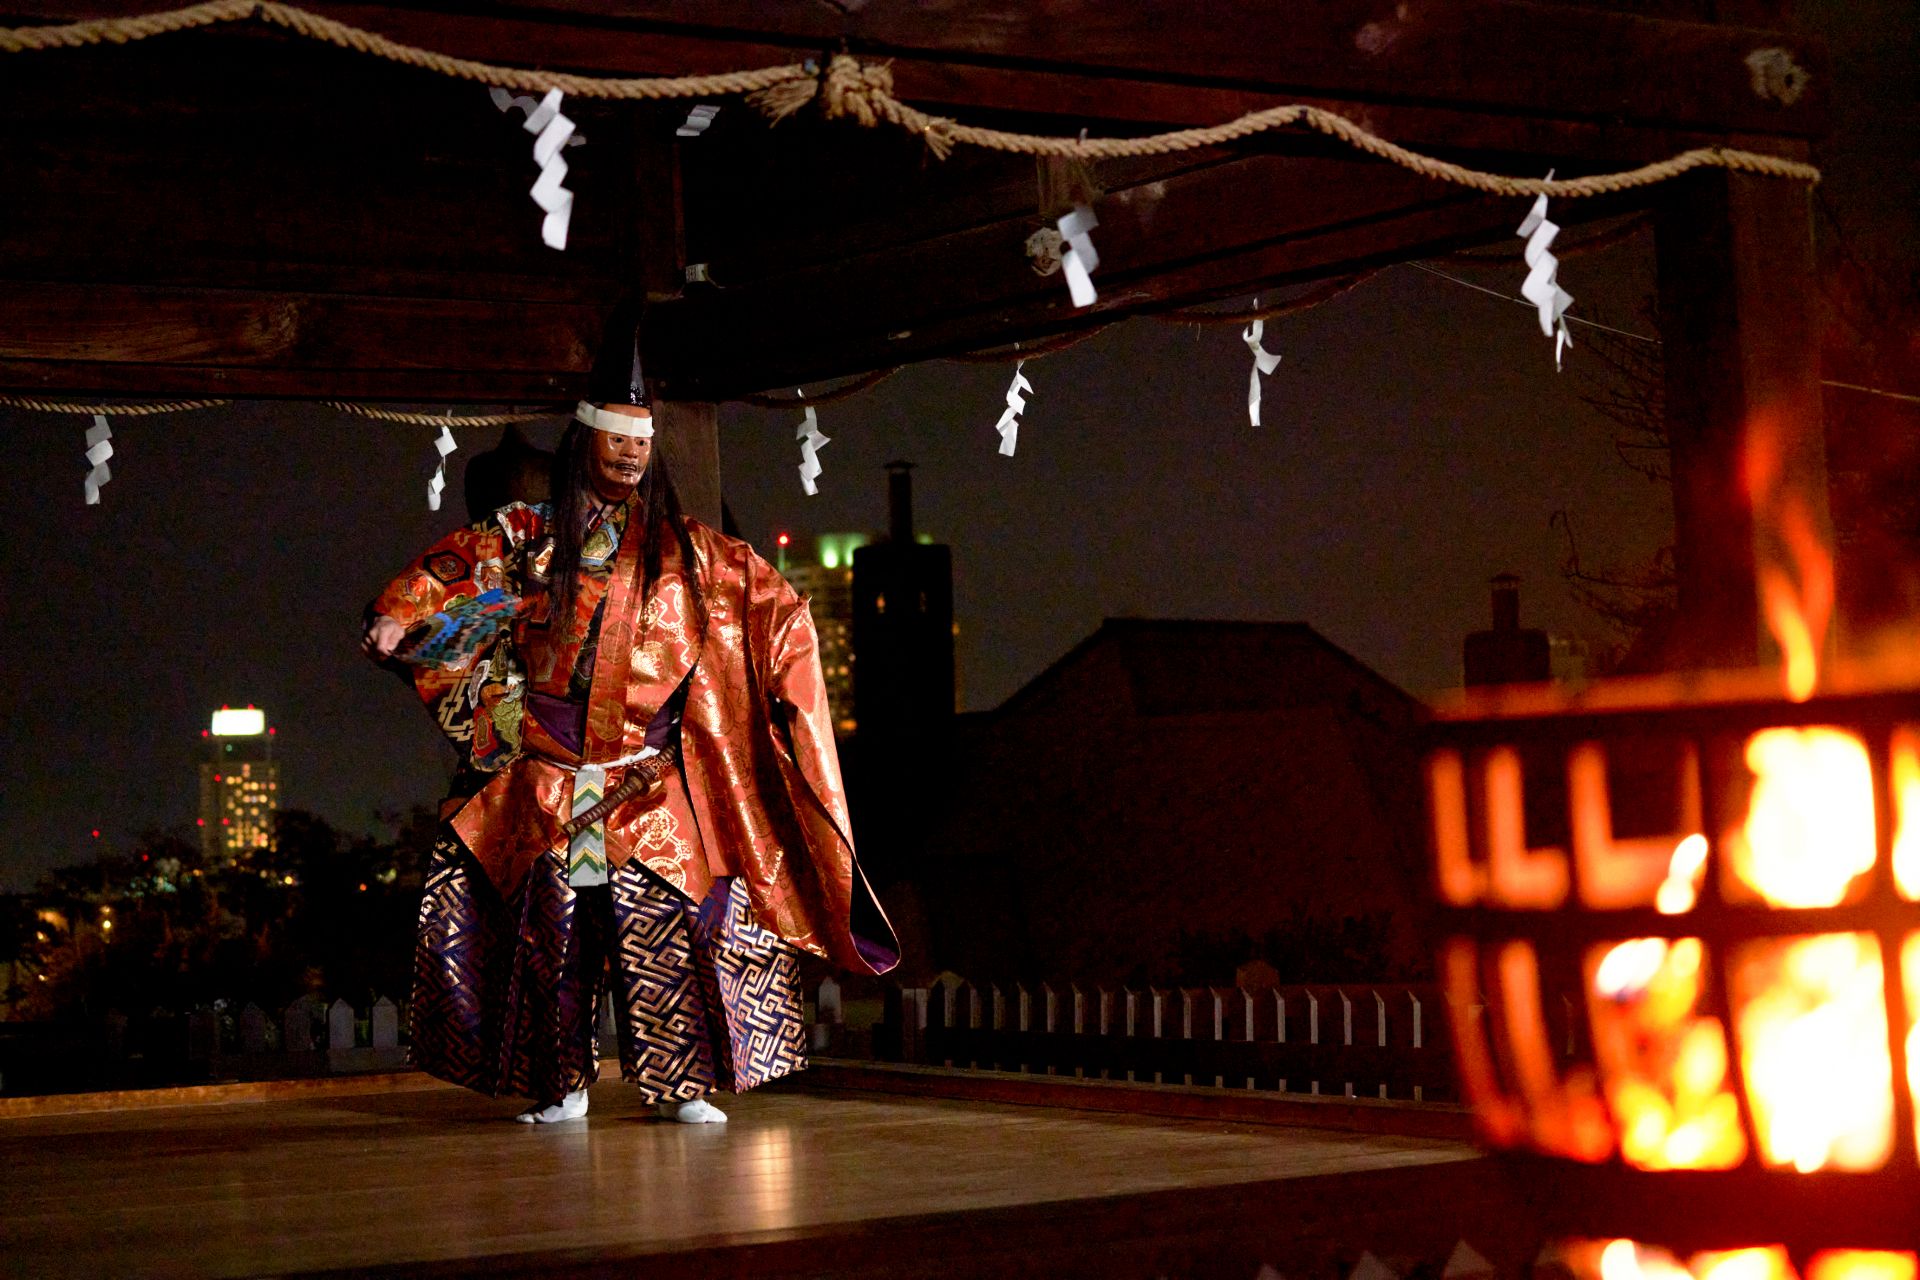 Una danza carcaj realizada en un escenario Noh iluminado por una hoguera con la vista nocturna de Kobe de fondo. Belleza exquisita